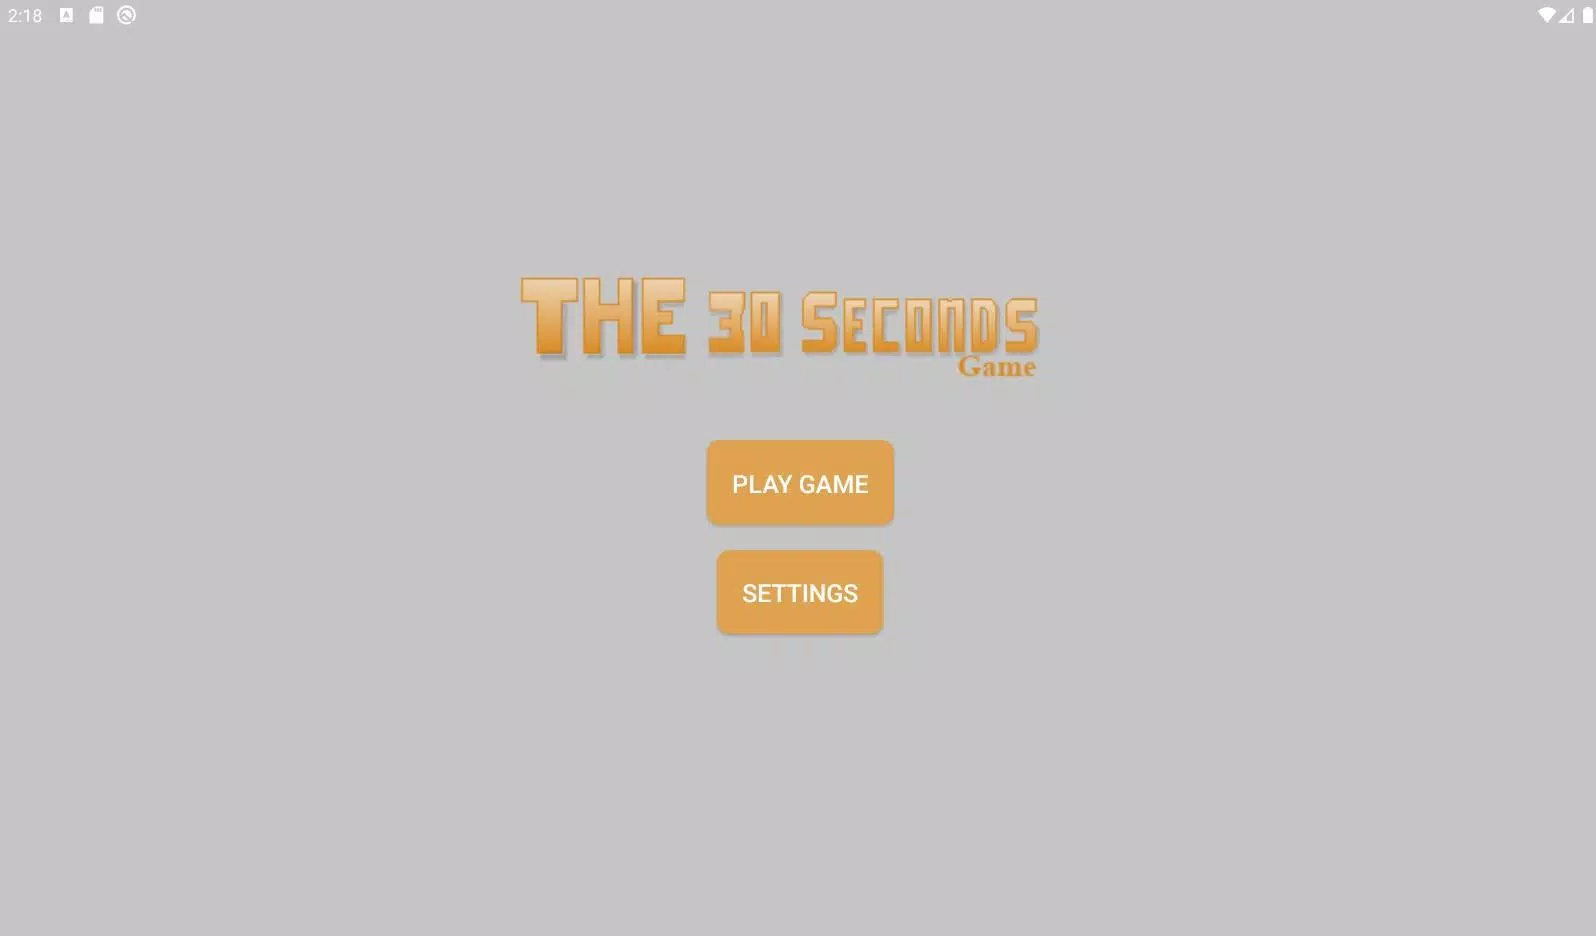 Picknicken Toestemming Resoneer THE 30 seconds game APK voor Android Download